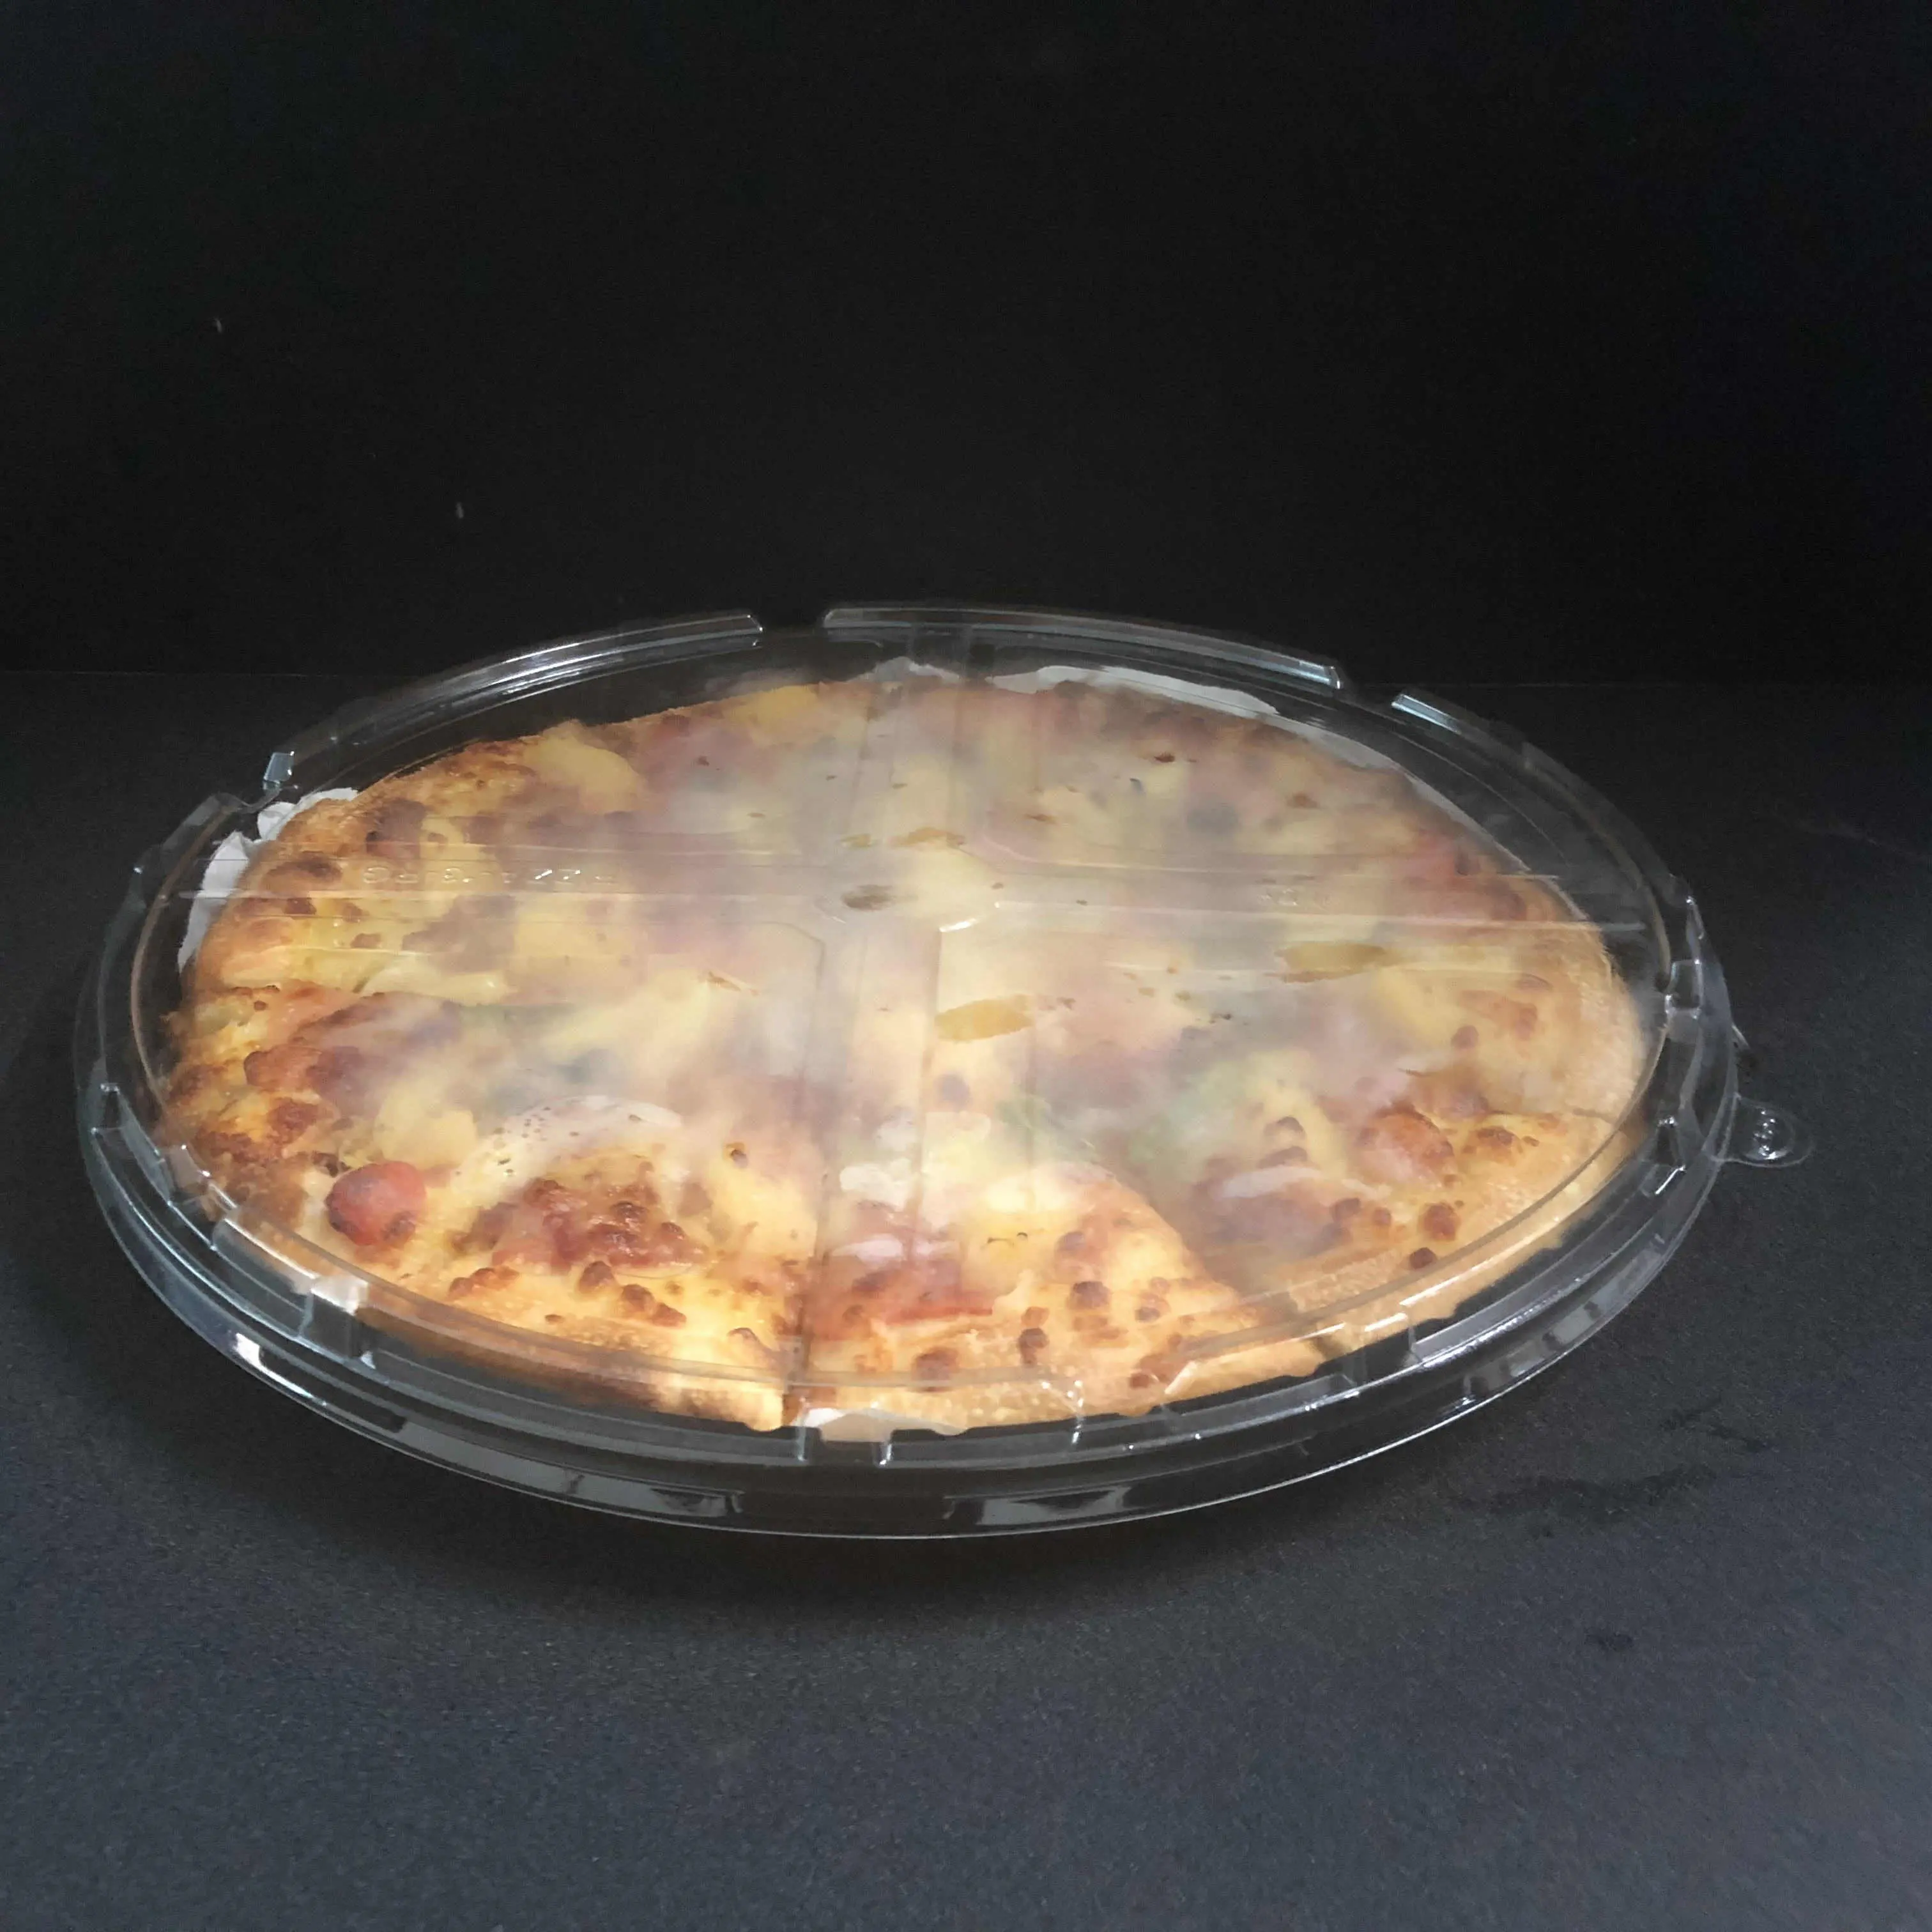 Scatola per pizza in plastica da 11 pollici contenitore vendibile con coperchio scatola per imballaggio in plastica riciclabile per pizza da asporto